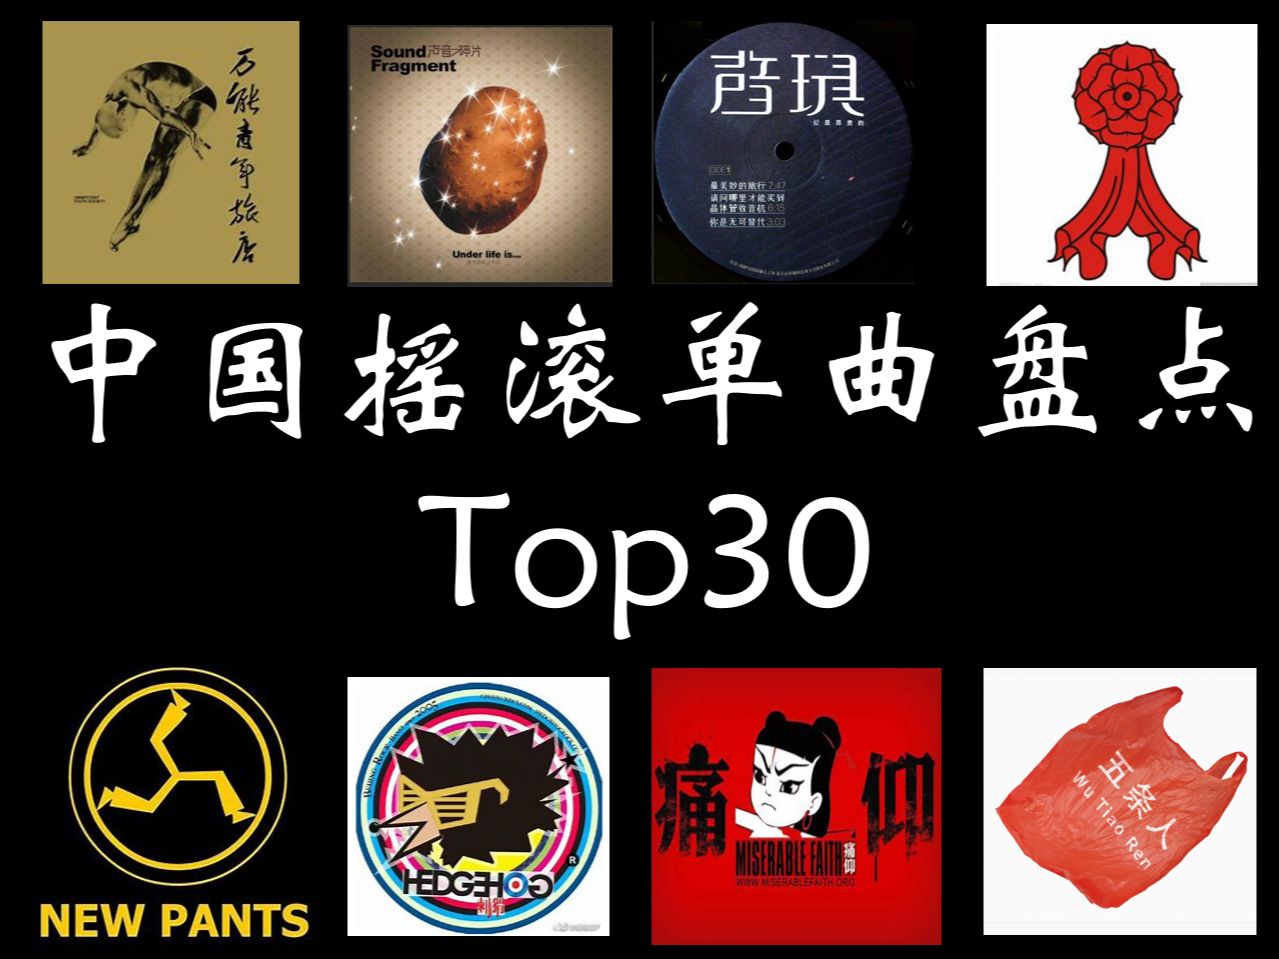 中国摇滚单曲Top30（第二期）